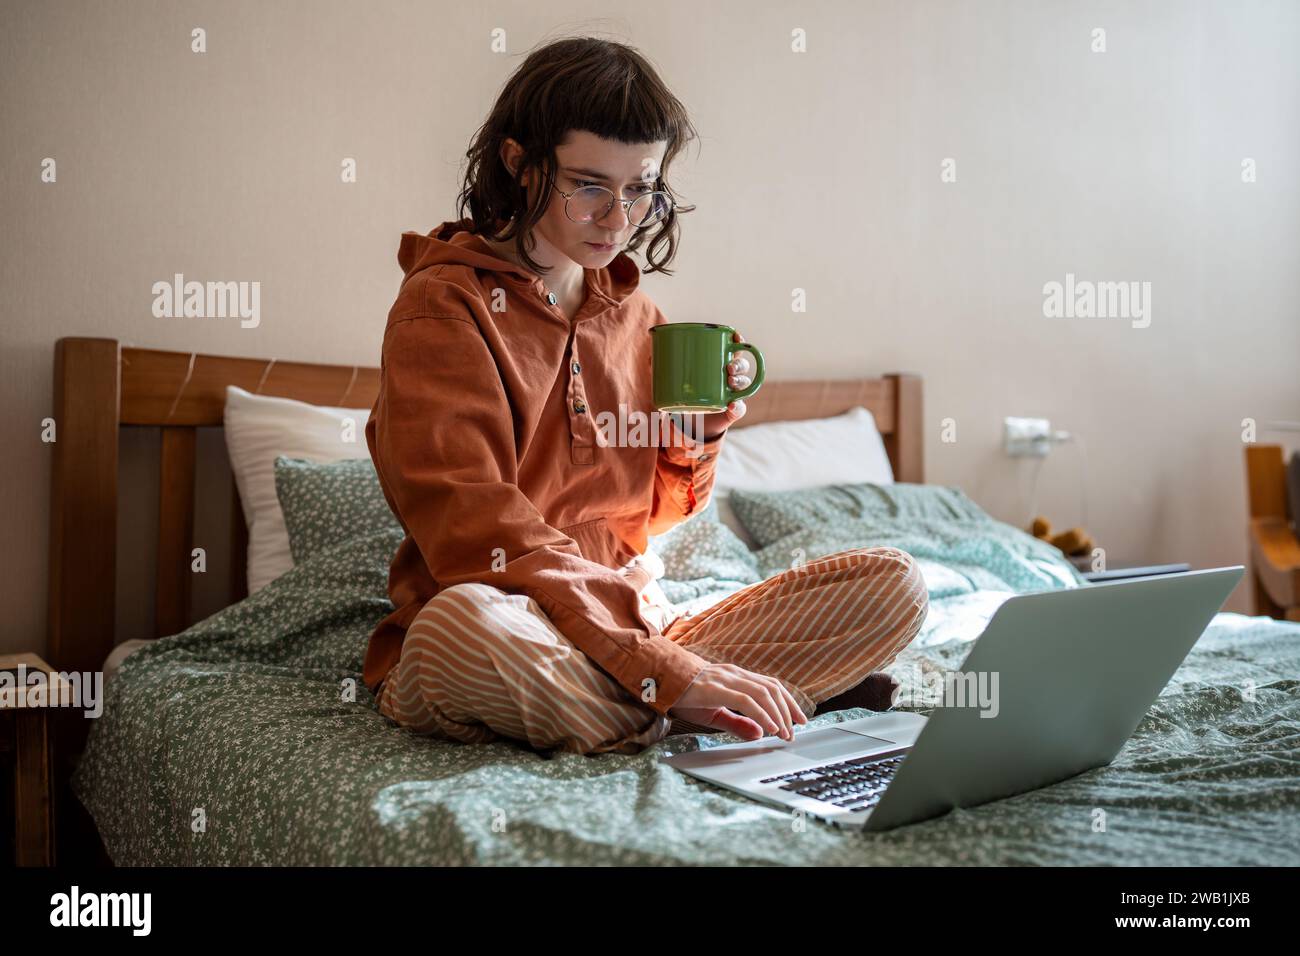 Intelligente diligente ragazza adolescente concentrata seduta a letto, che studia a casa utilizzando un computer portatile Foto Stock